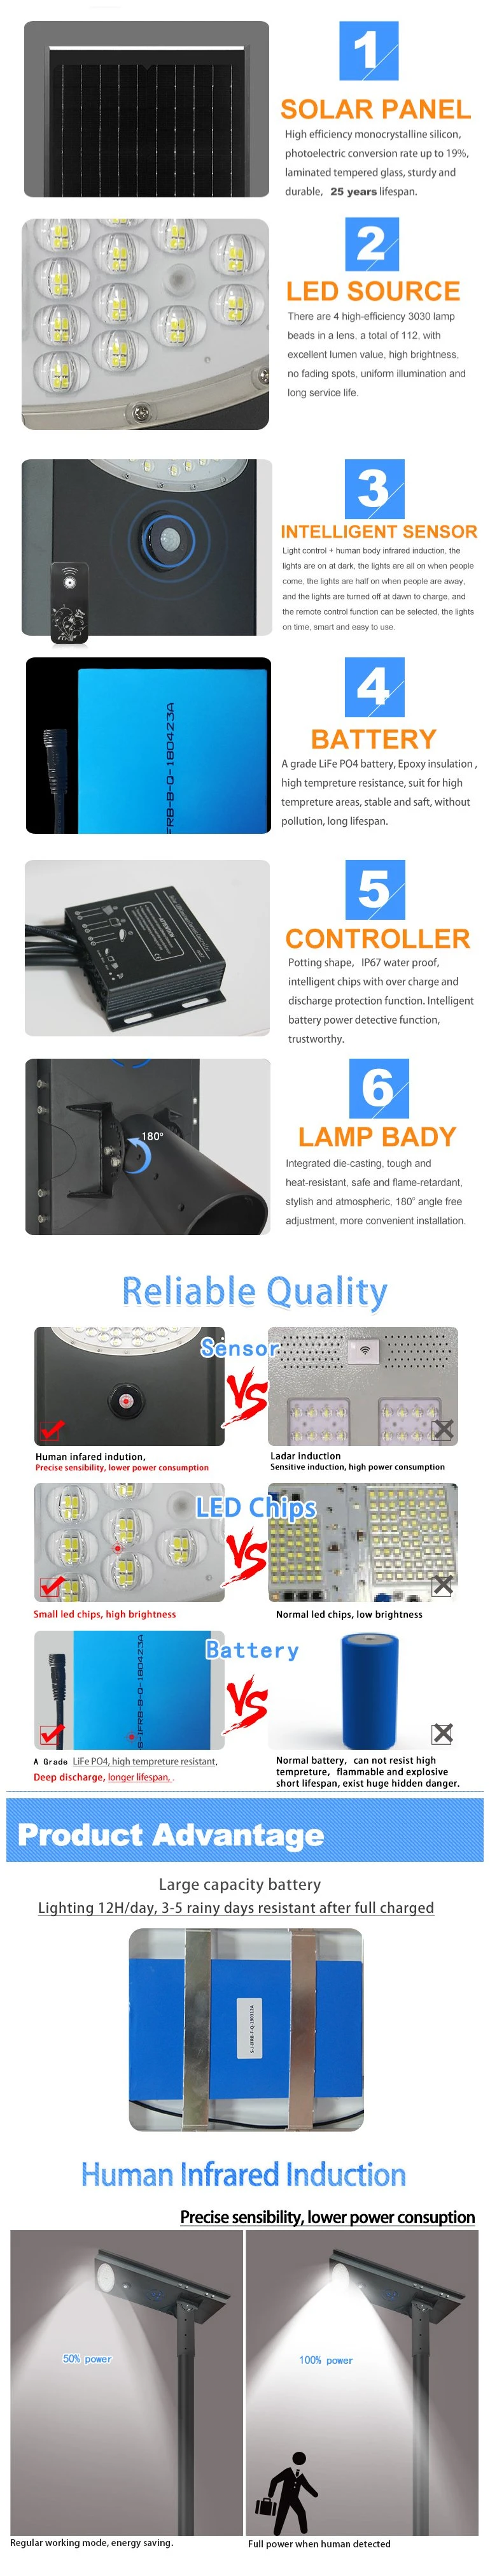 Best Value Solar LED Light for Country Roads